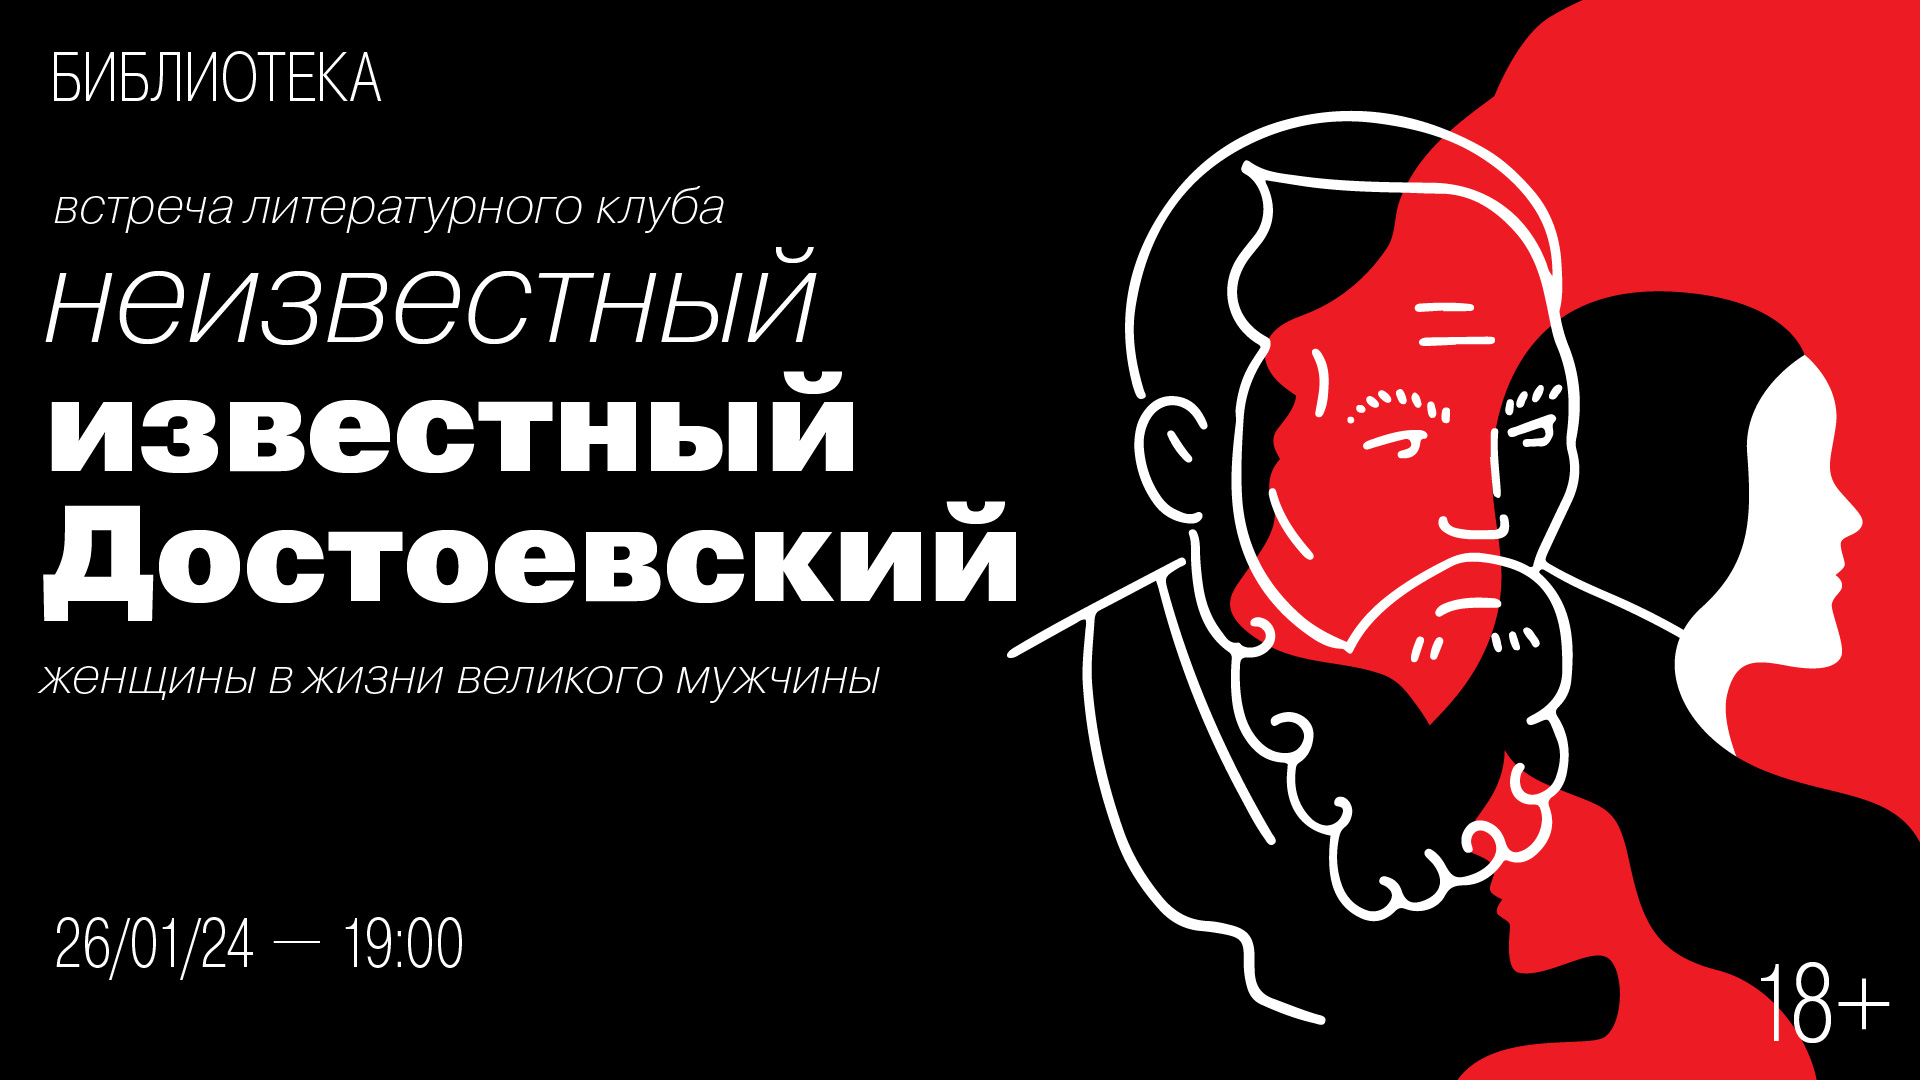 Встреча литературного клуба «Неизвестный известный Достоевский»:<br>Женщины в жизни великого мужчины